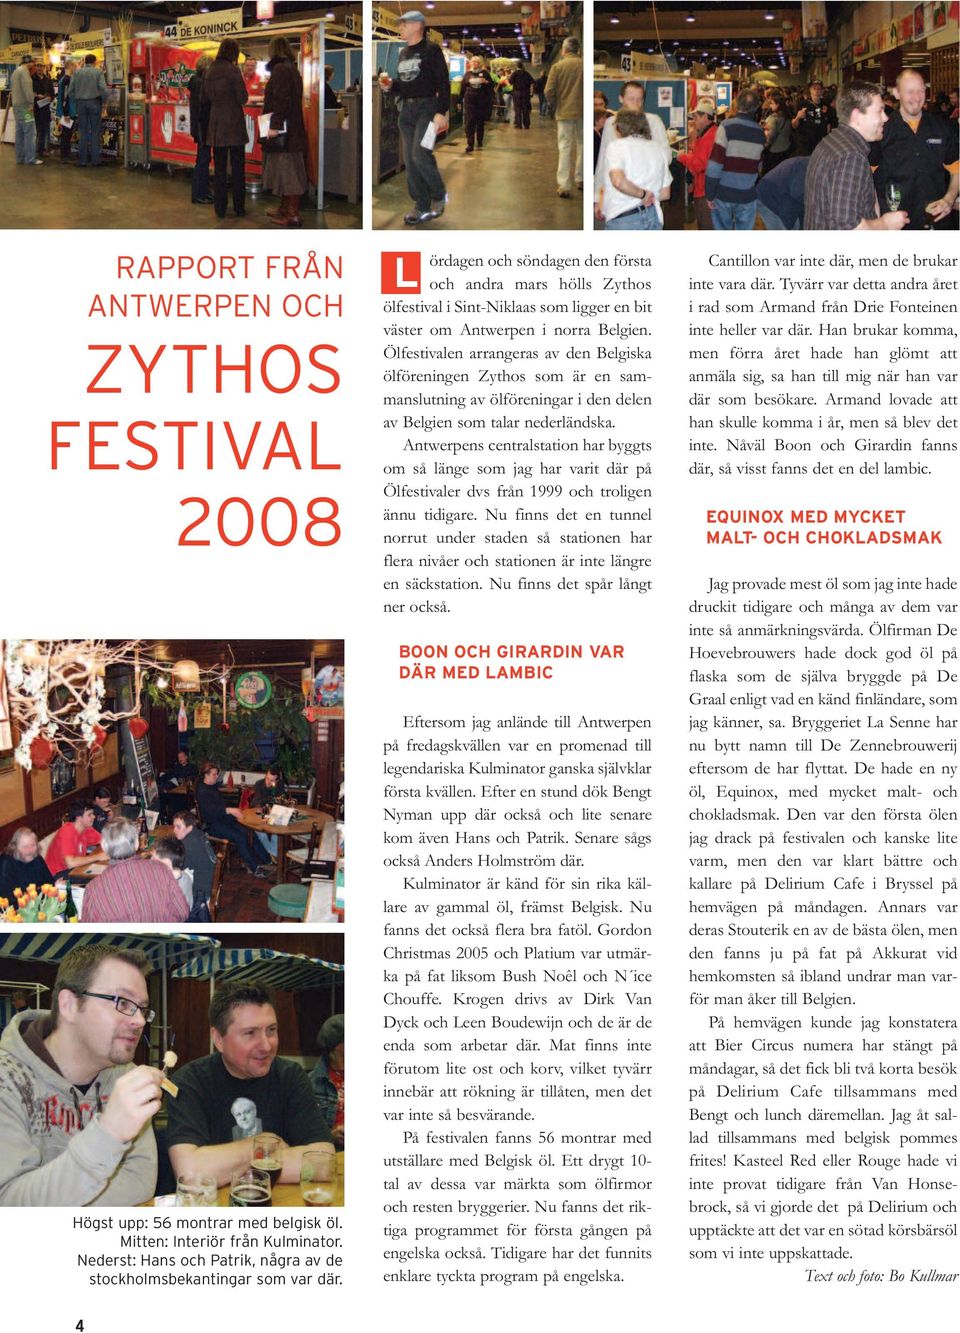 Ölfestivalen arrangeras av den Belgiska ölföreningen Zythos som är en sammanslutning av ölföreningar i den delen av Belgien som talar nederländska.